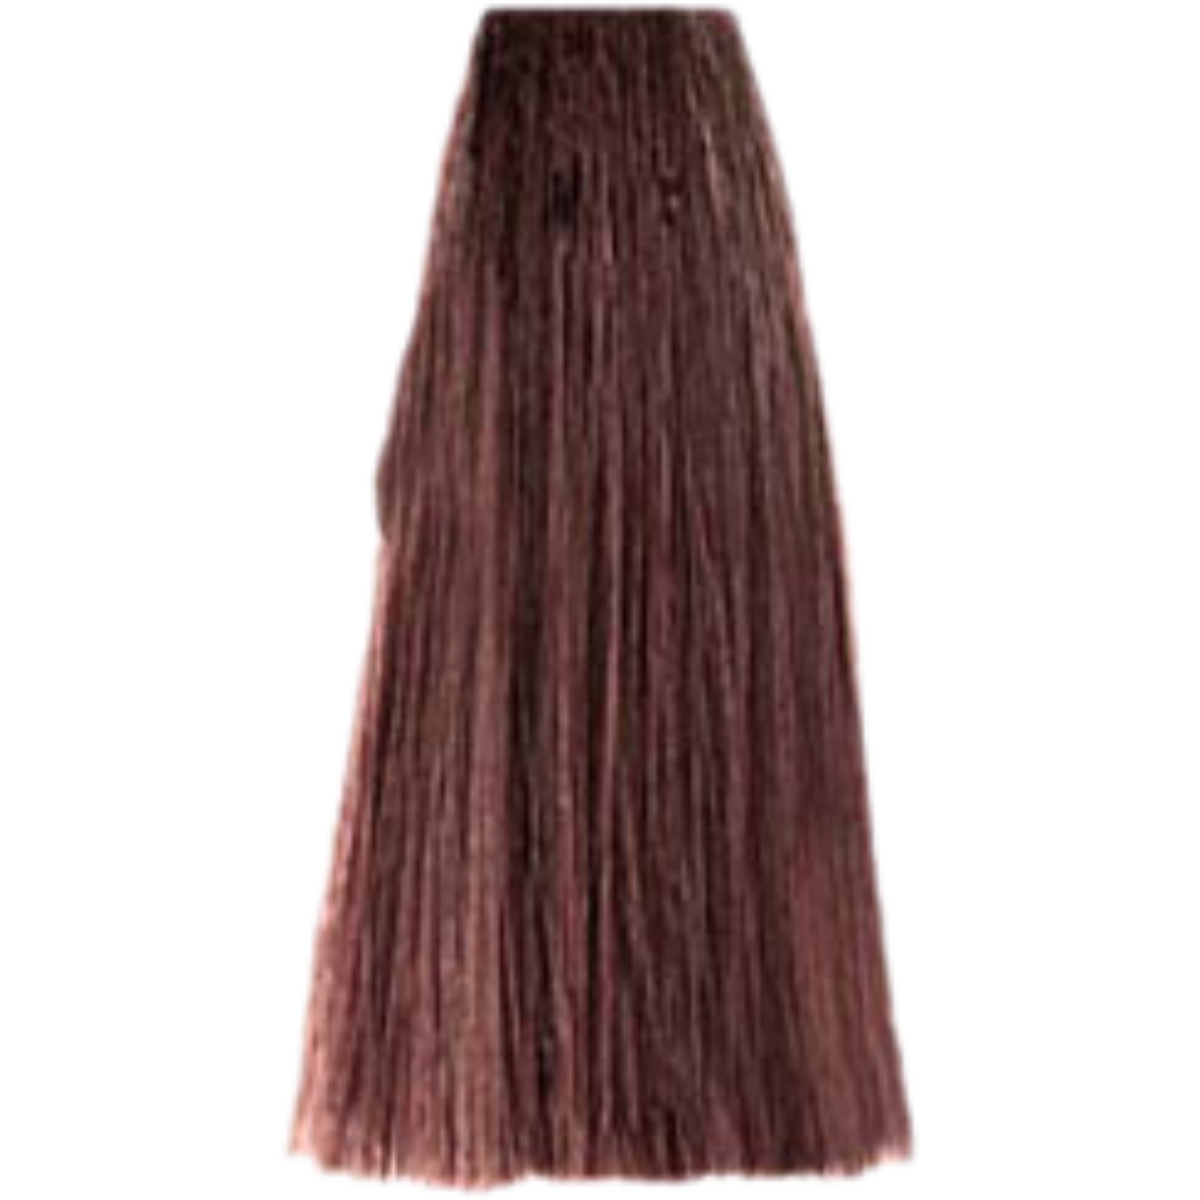 צבע שיער 6.7 DARK BLONDE BROWN פארמויטה FarmaVita צבע לשיער 100 גרם